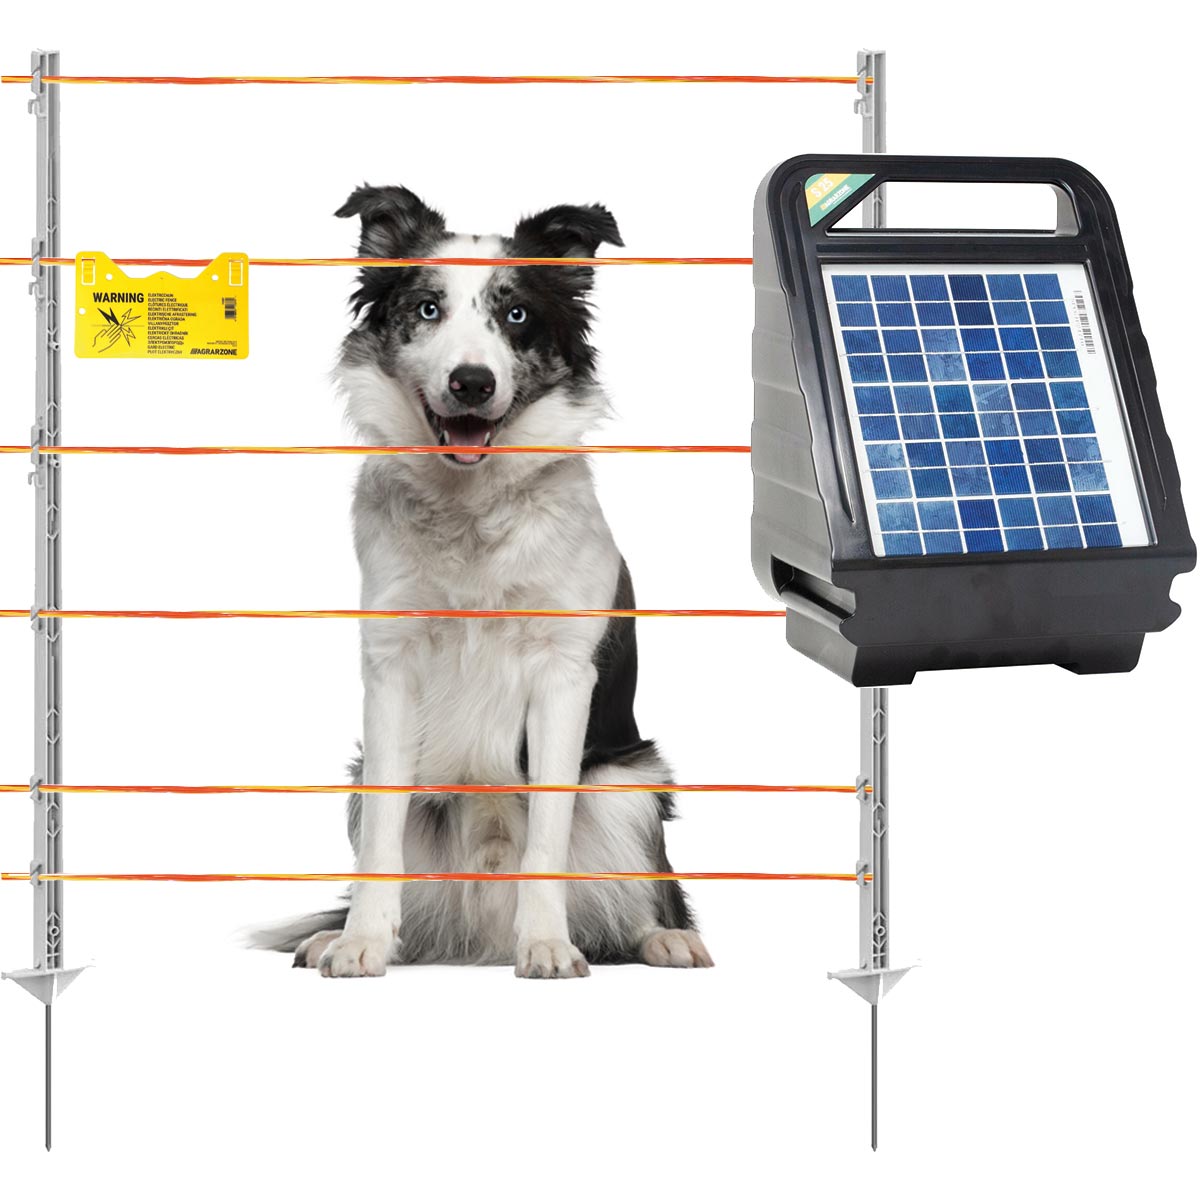 Hundezaun Komplett Set 12V Solar, Litze 500 m